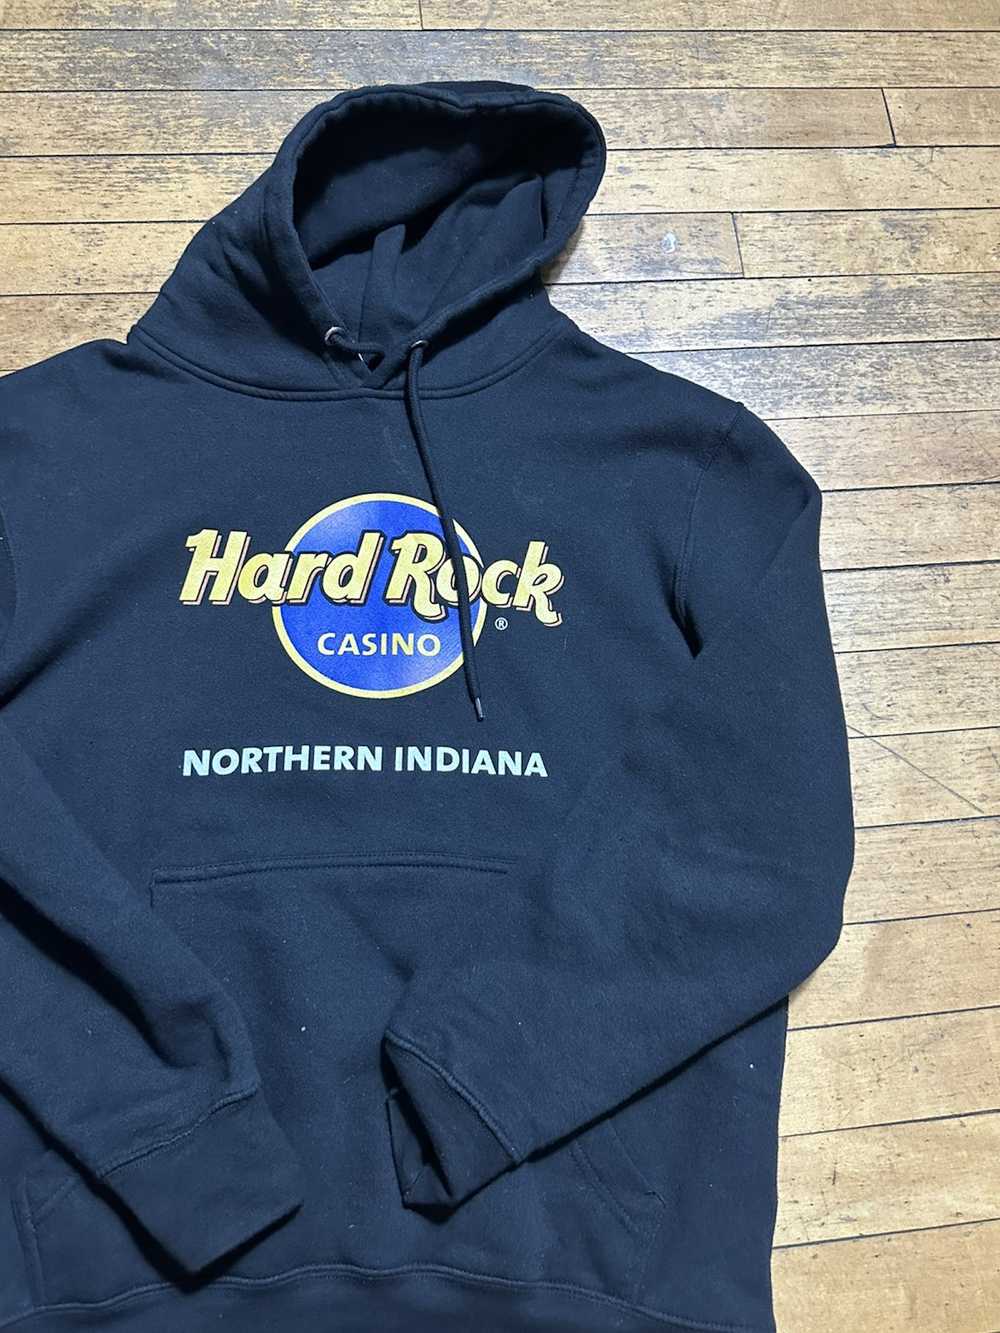 Hard Rock Cafe hard rock hoodie - image 2